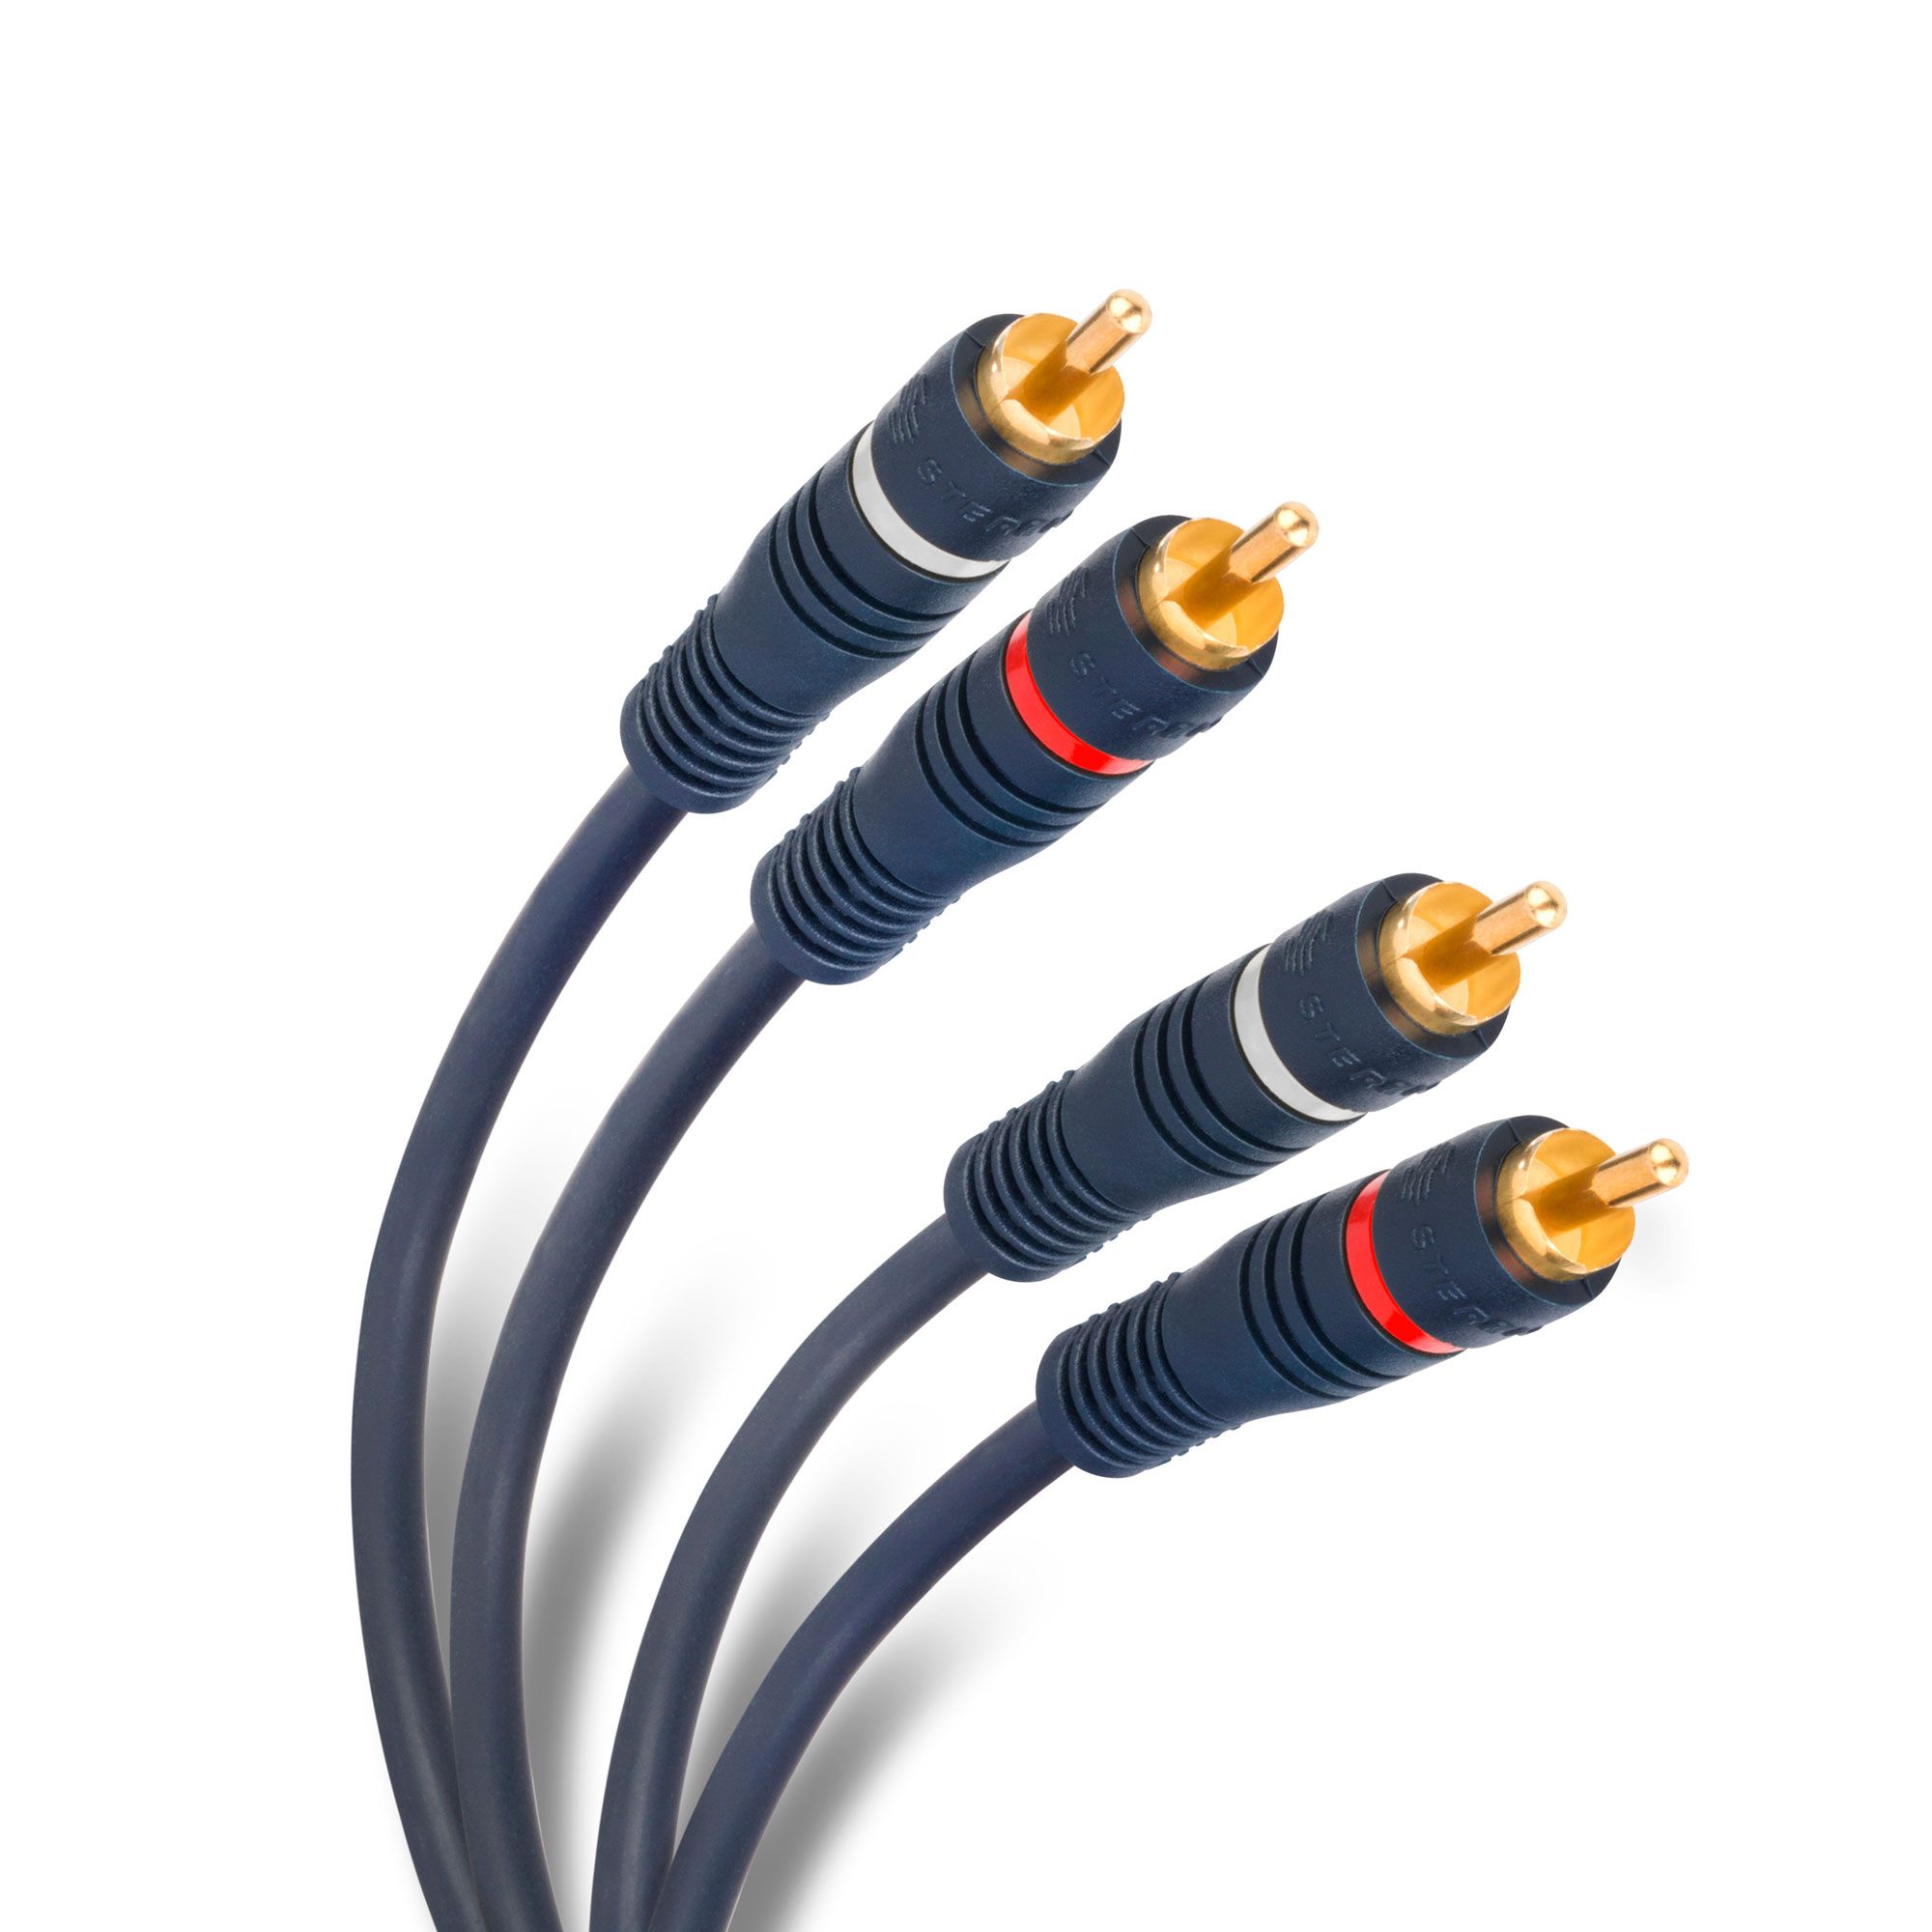 Pence operación regla Cable RCA 2 plug a 2 plug de 7,2 m Steren Tienda en Lín